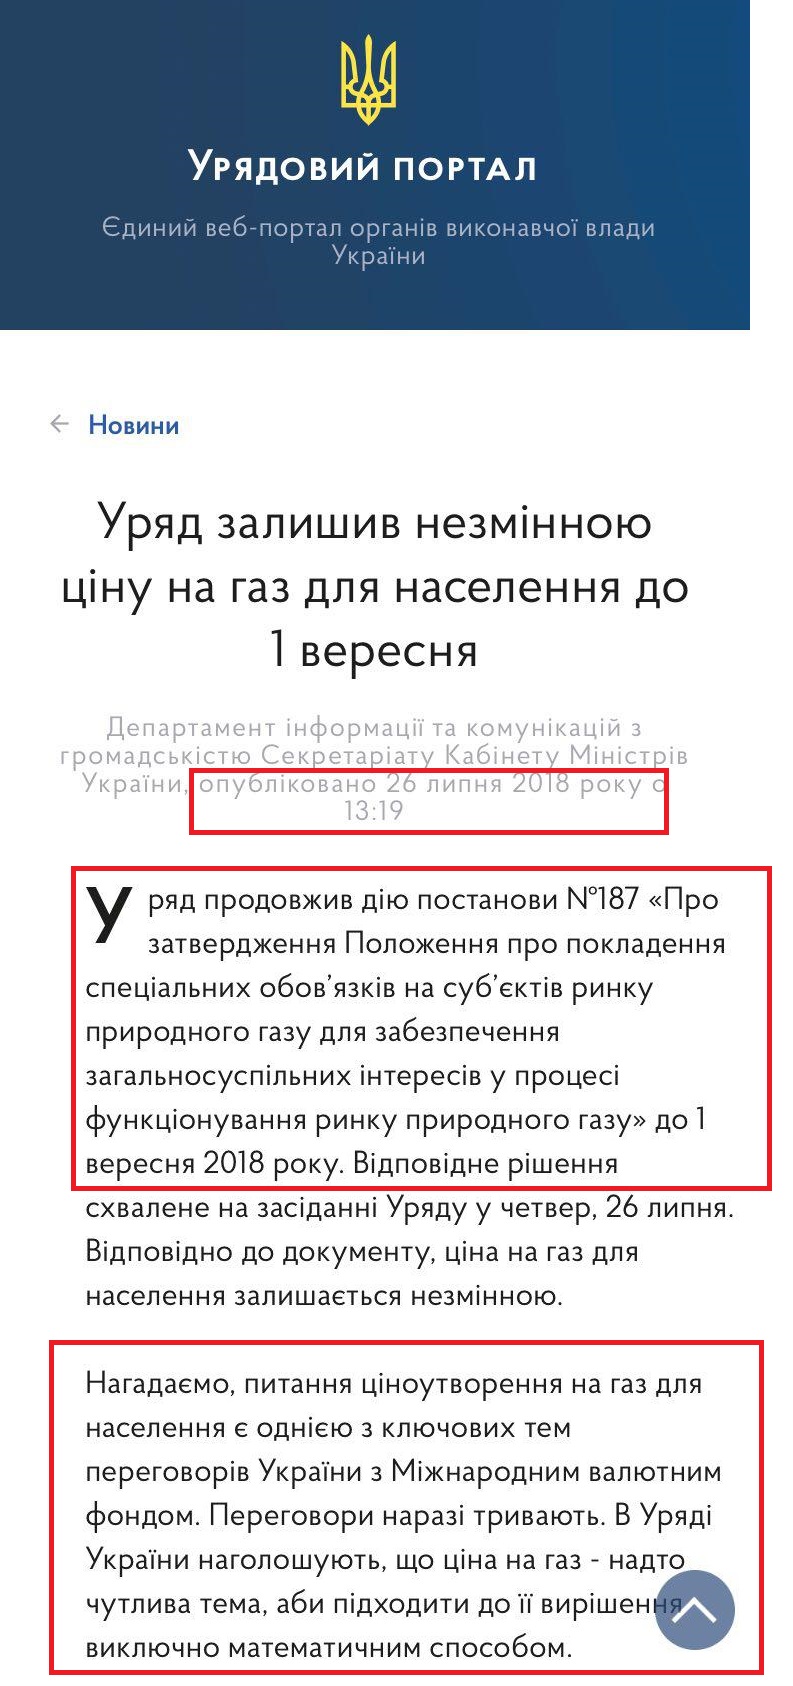 https://www.kmu.gov.ua/ua/news/uryad-zalishiv-nezminnoyu-cinu-na-gaz-dlya-naselennya-do-1-veresnya